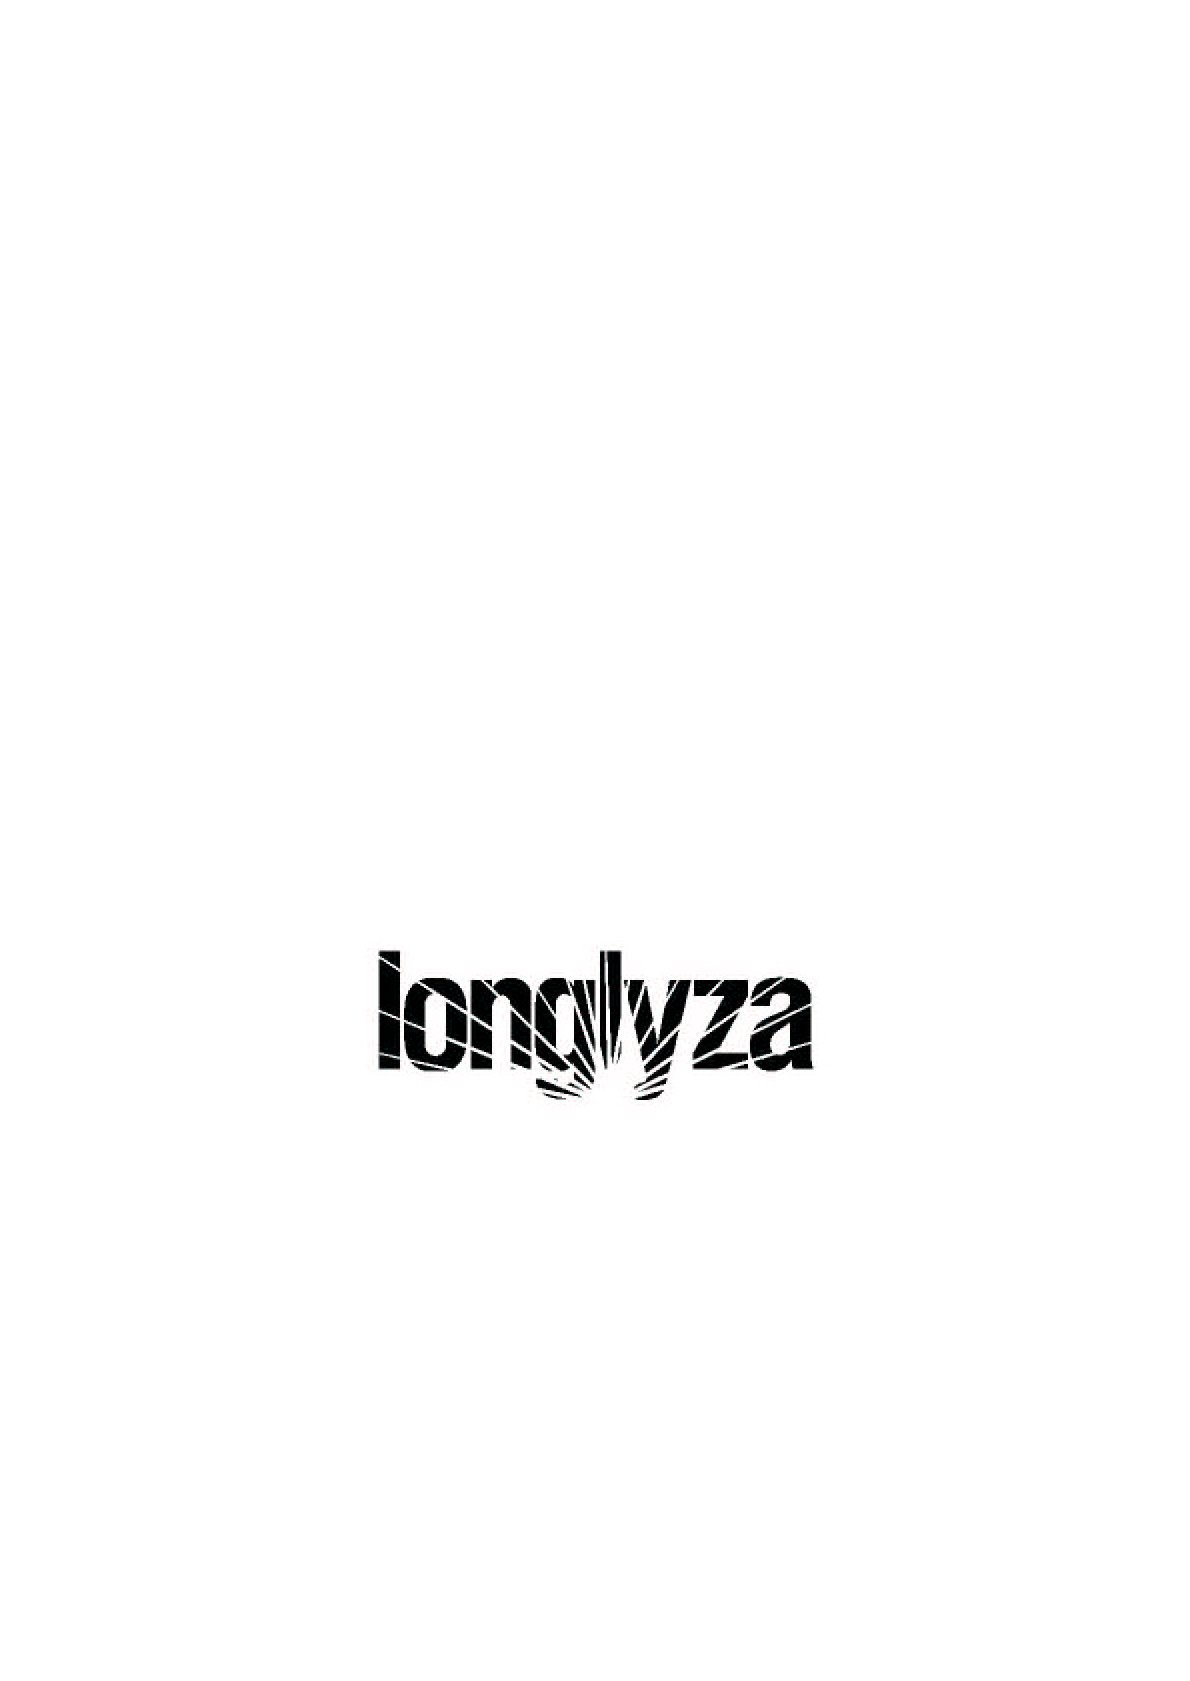 Trademark Logo LONGLYZA